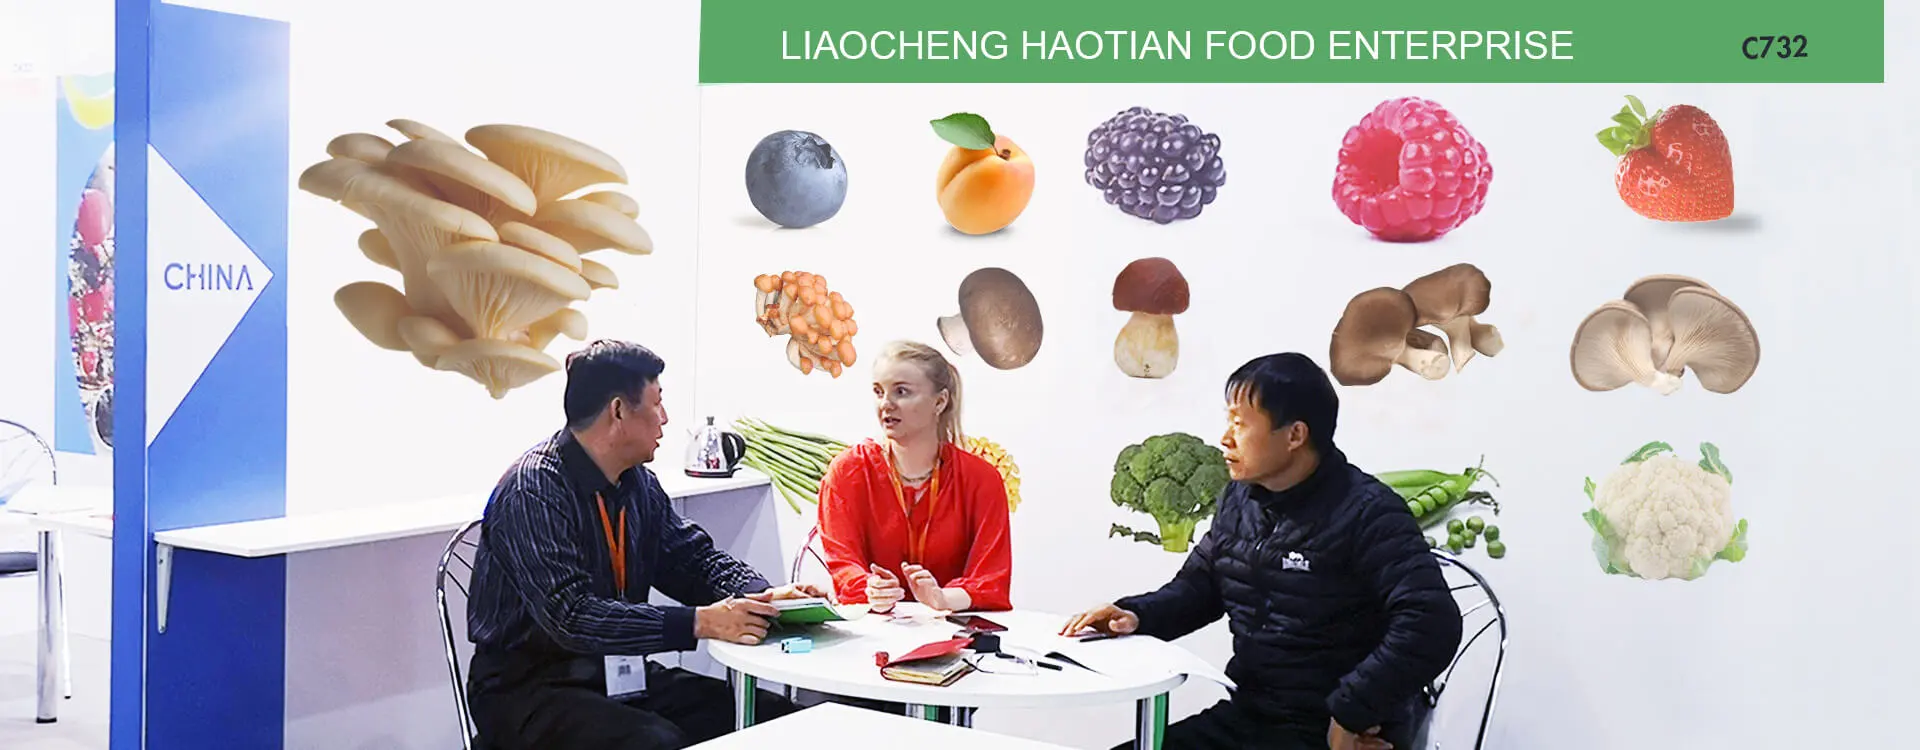 วิสาหกิจอาหาร Liaocheng Haotian